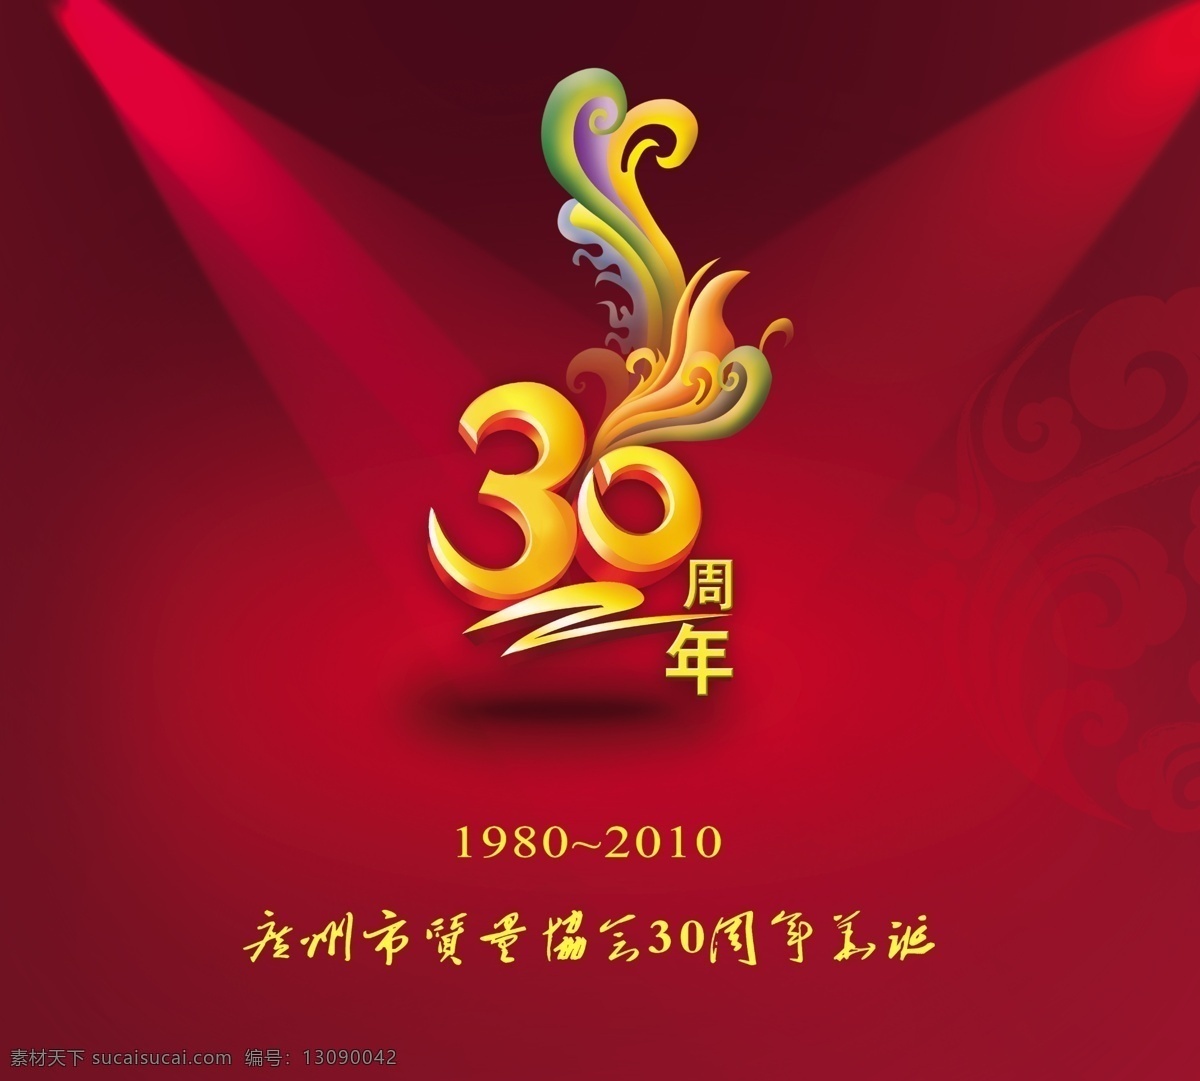 纪念邮册封套 30周年 立体字 纪念册 红色封面 云纹 中国红 其他模版 广告设计模板 源文件